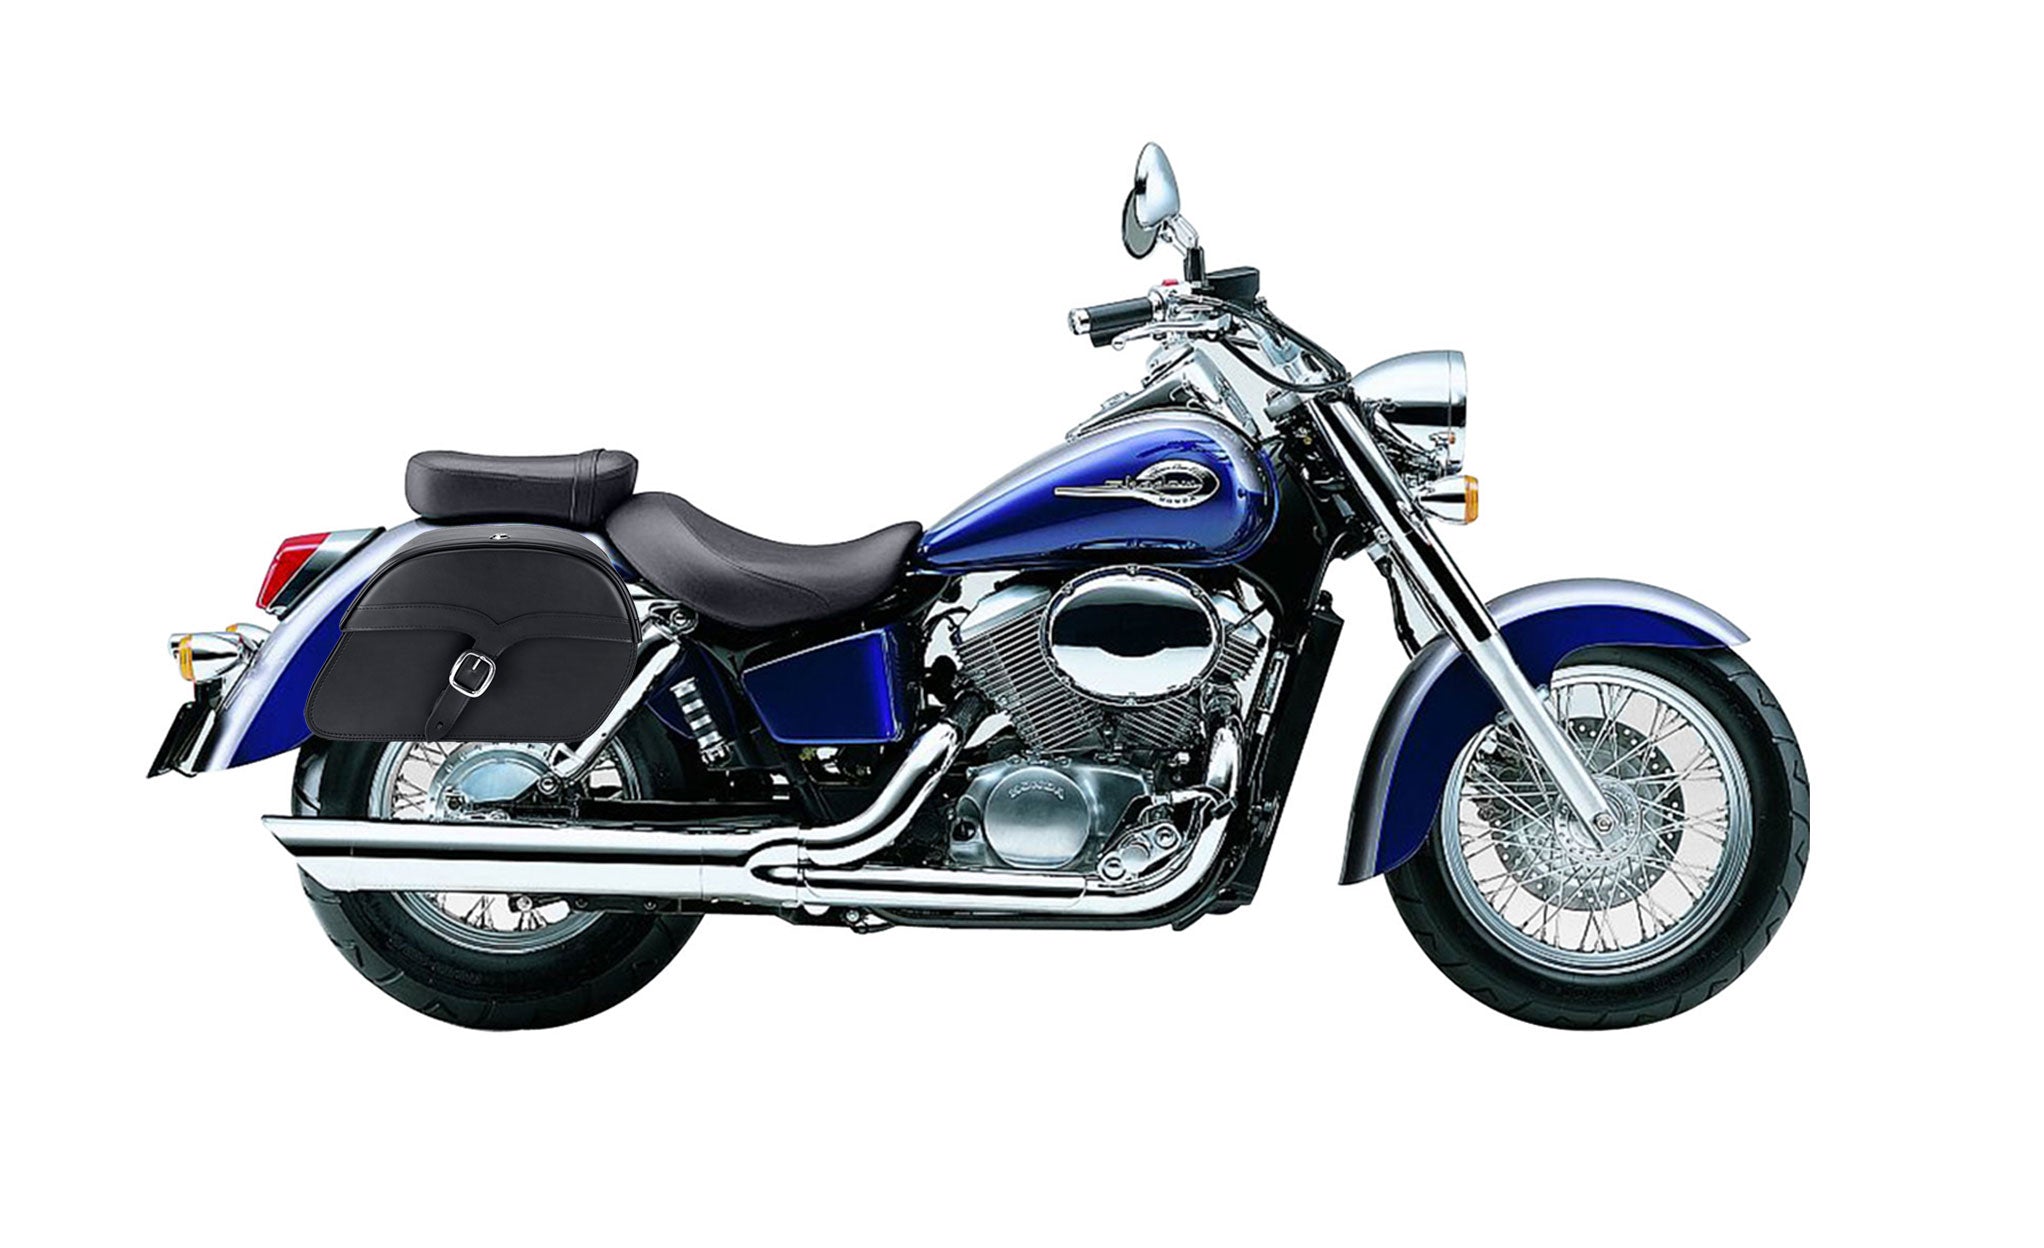 Viking Vintage Medium Honda Shadow 750 Ace Leather Motorcycle Saddlebags on Bike Photo @expand